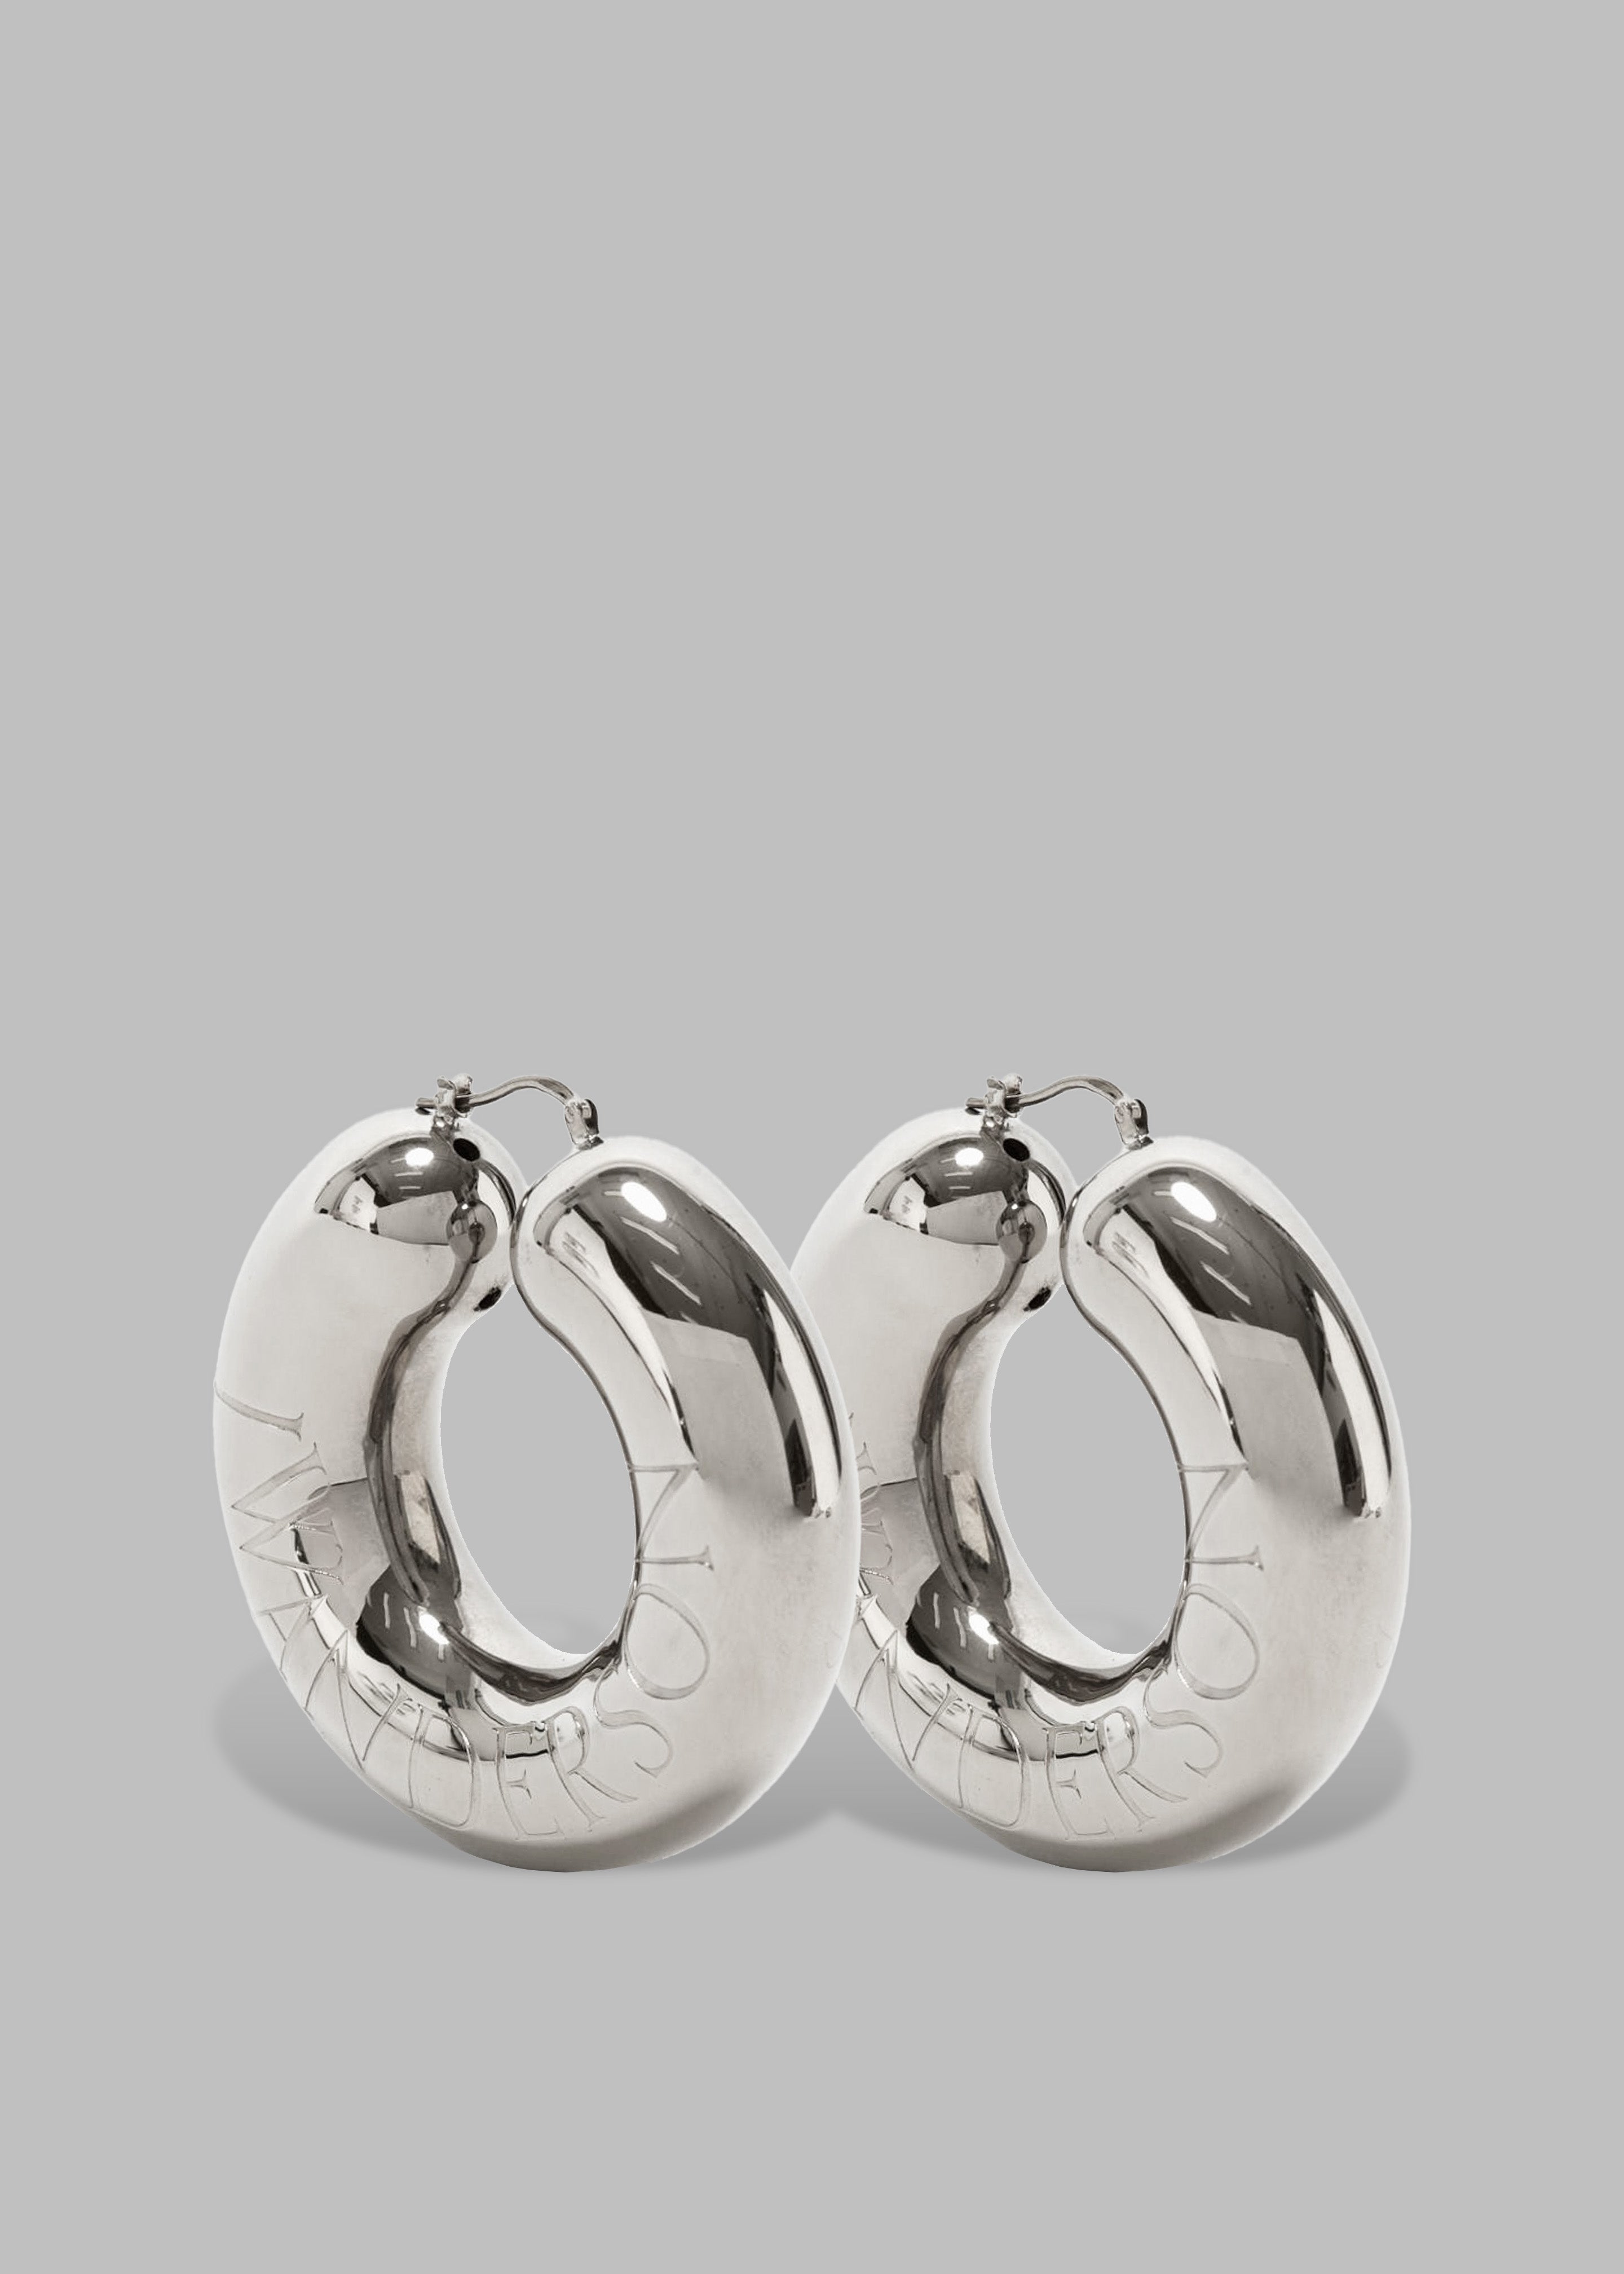 JW Anderson Bumper-Tube Earrings - Silver Tone - 2